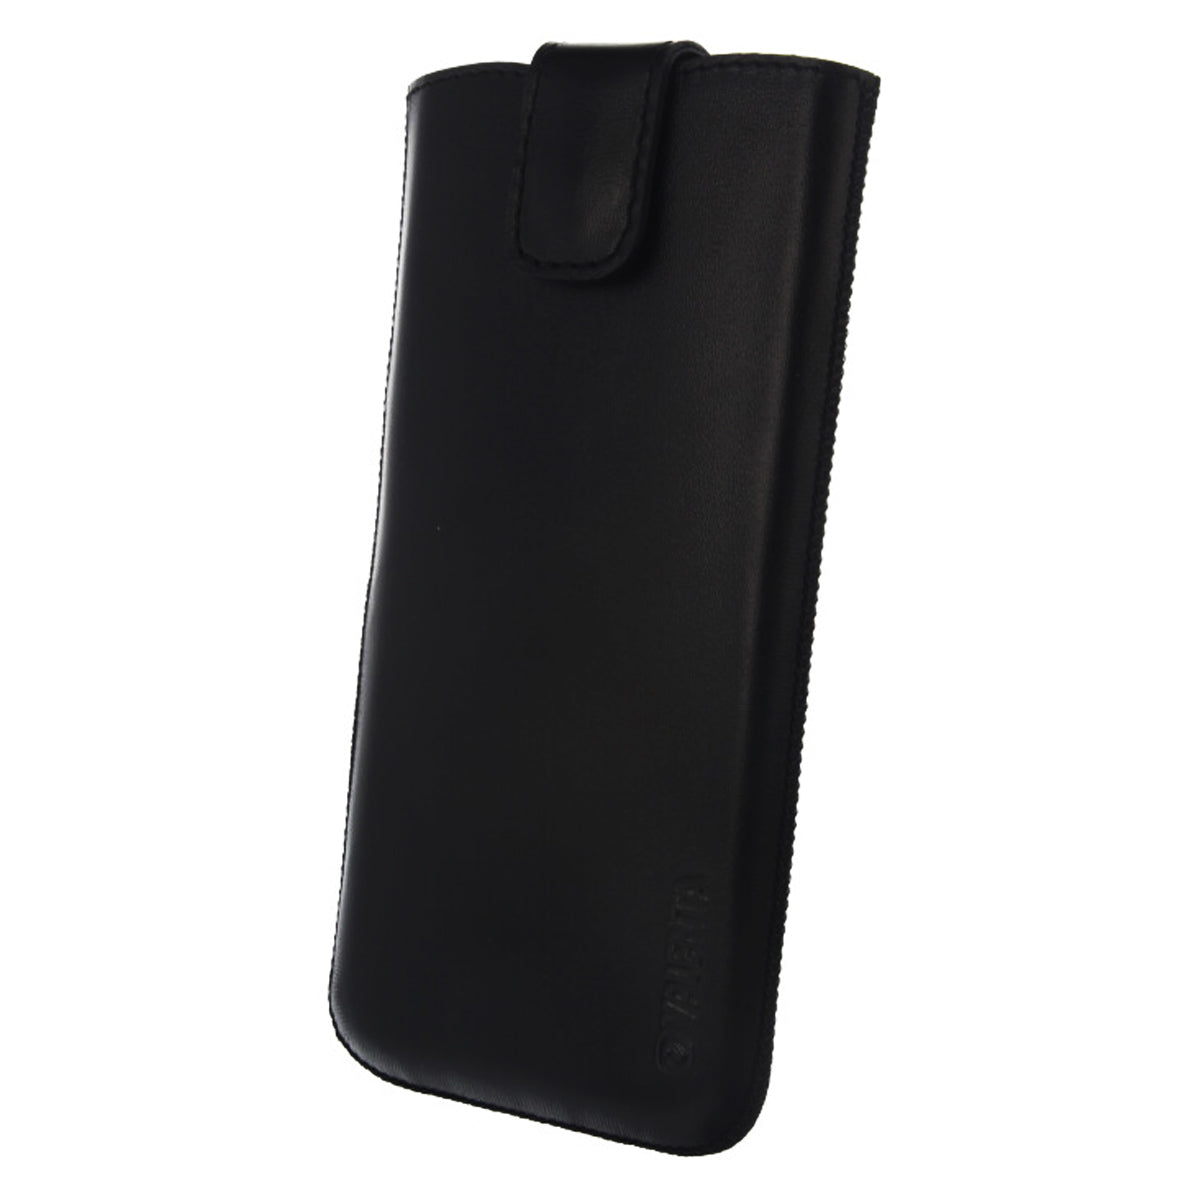  Einschubhülle Pocket UNI Schwarz Medium - H162 x B77 x D9